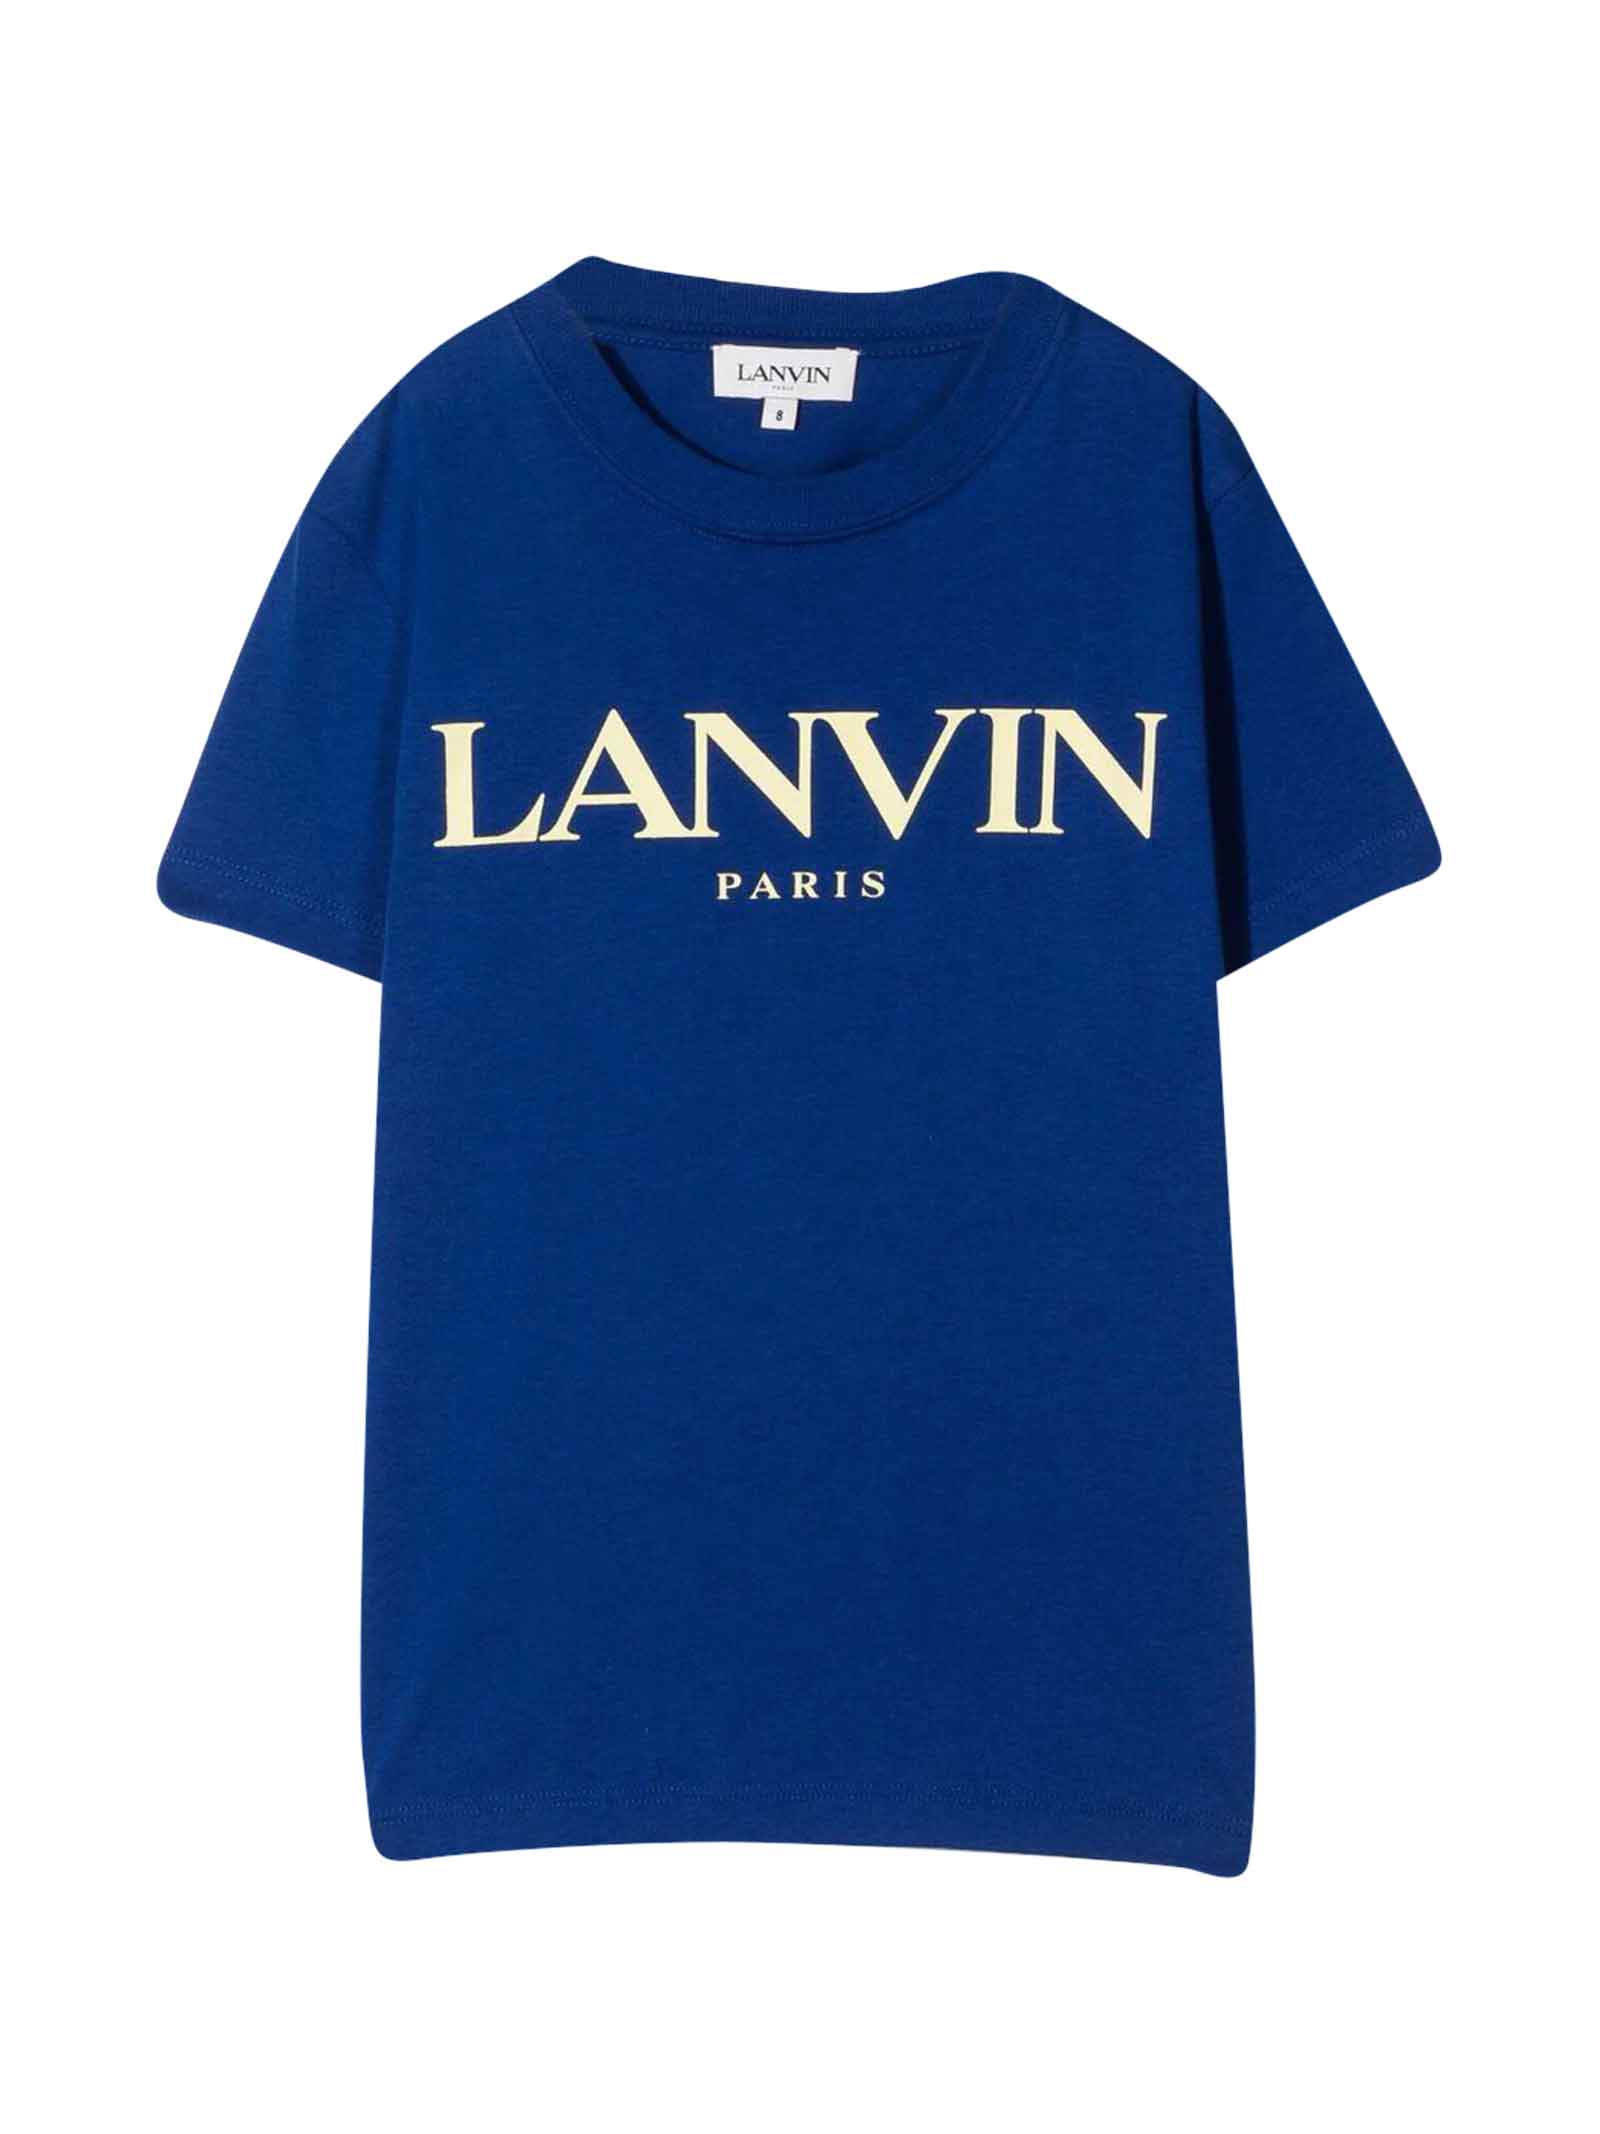 Lanvin Elettric Blue Unisex T-shirt